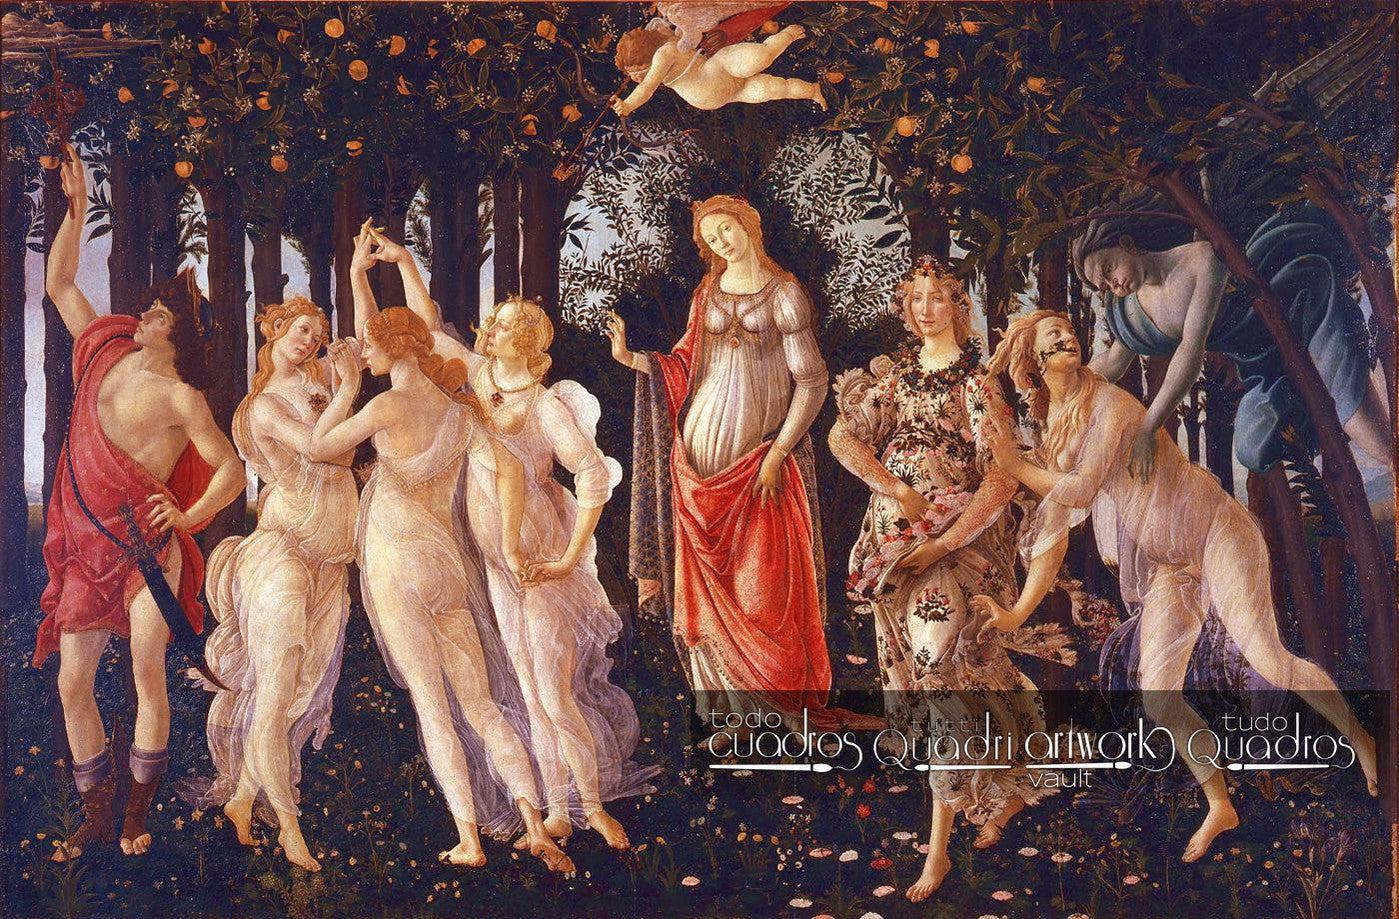 La Primavera, Botticelli